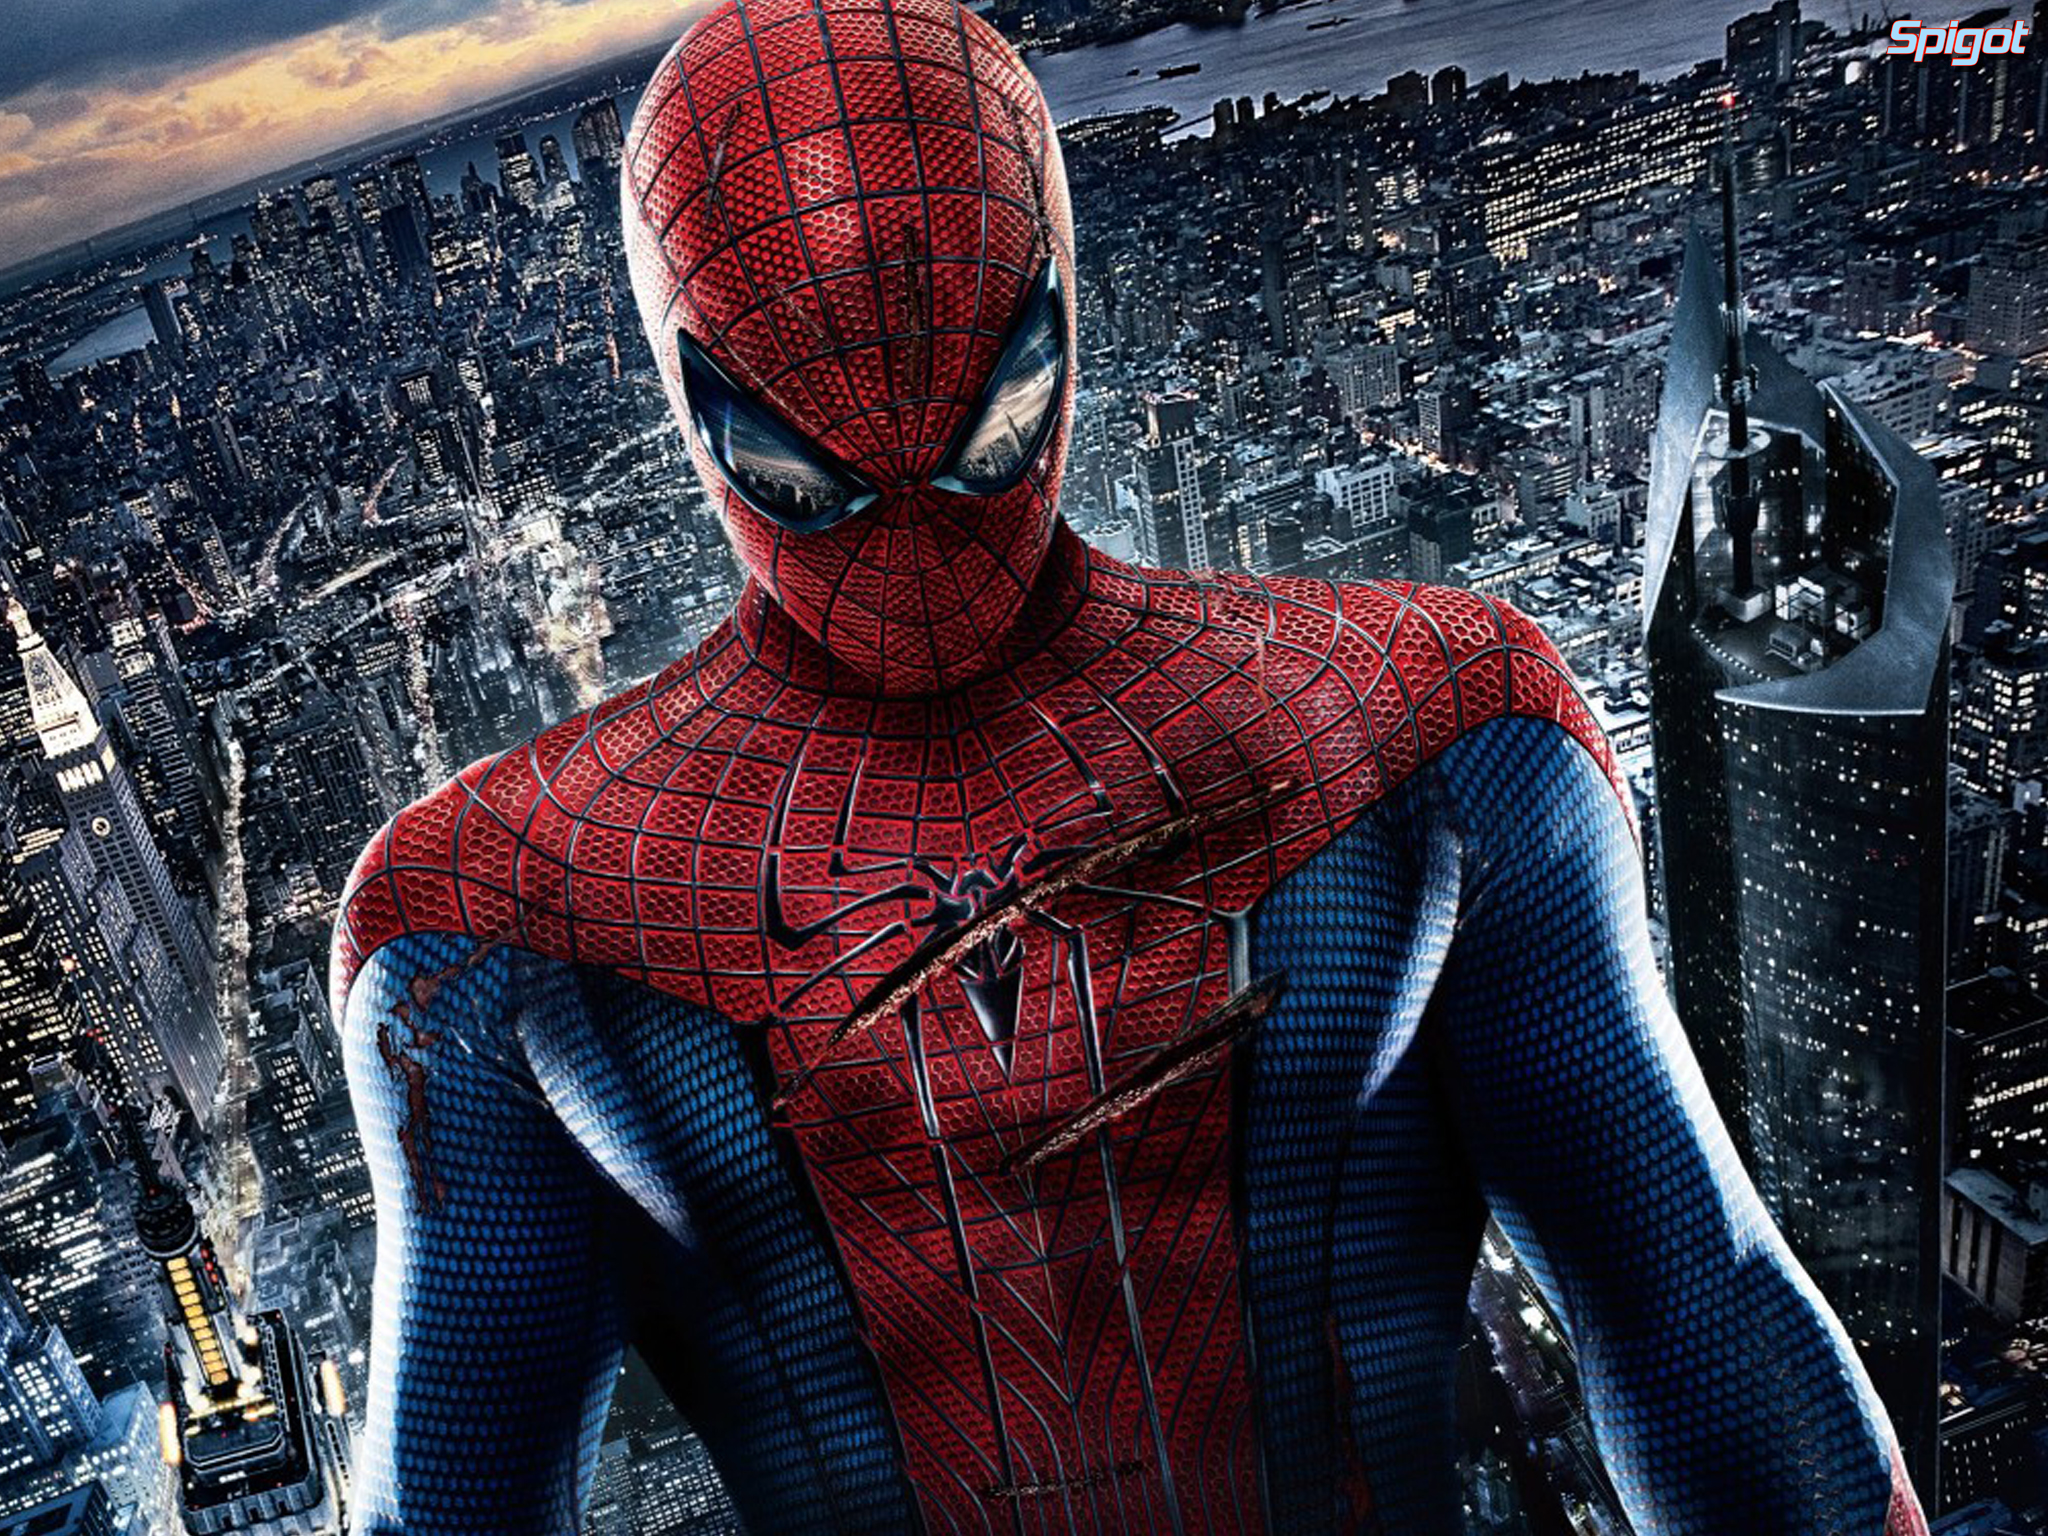 The Amazing Spider-Man | George Spigot's Blog